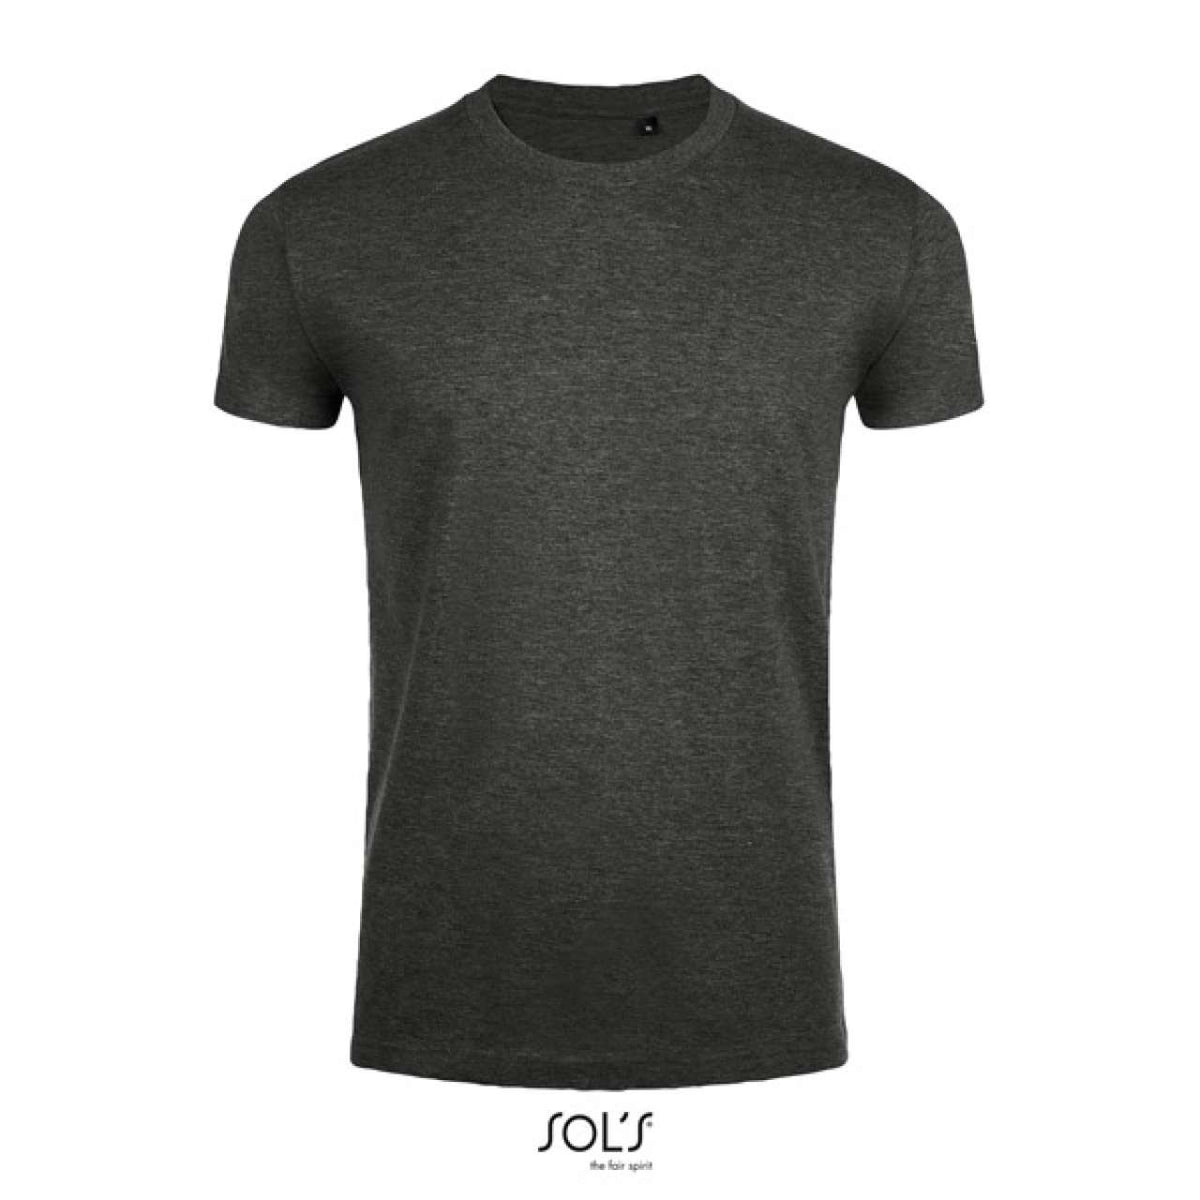 SOL'S Herren T-Shirt Round Neck Basic Oberteil Shirt Rundhals